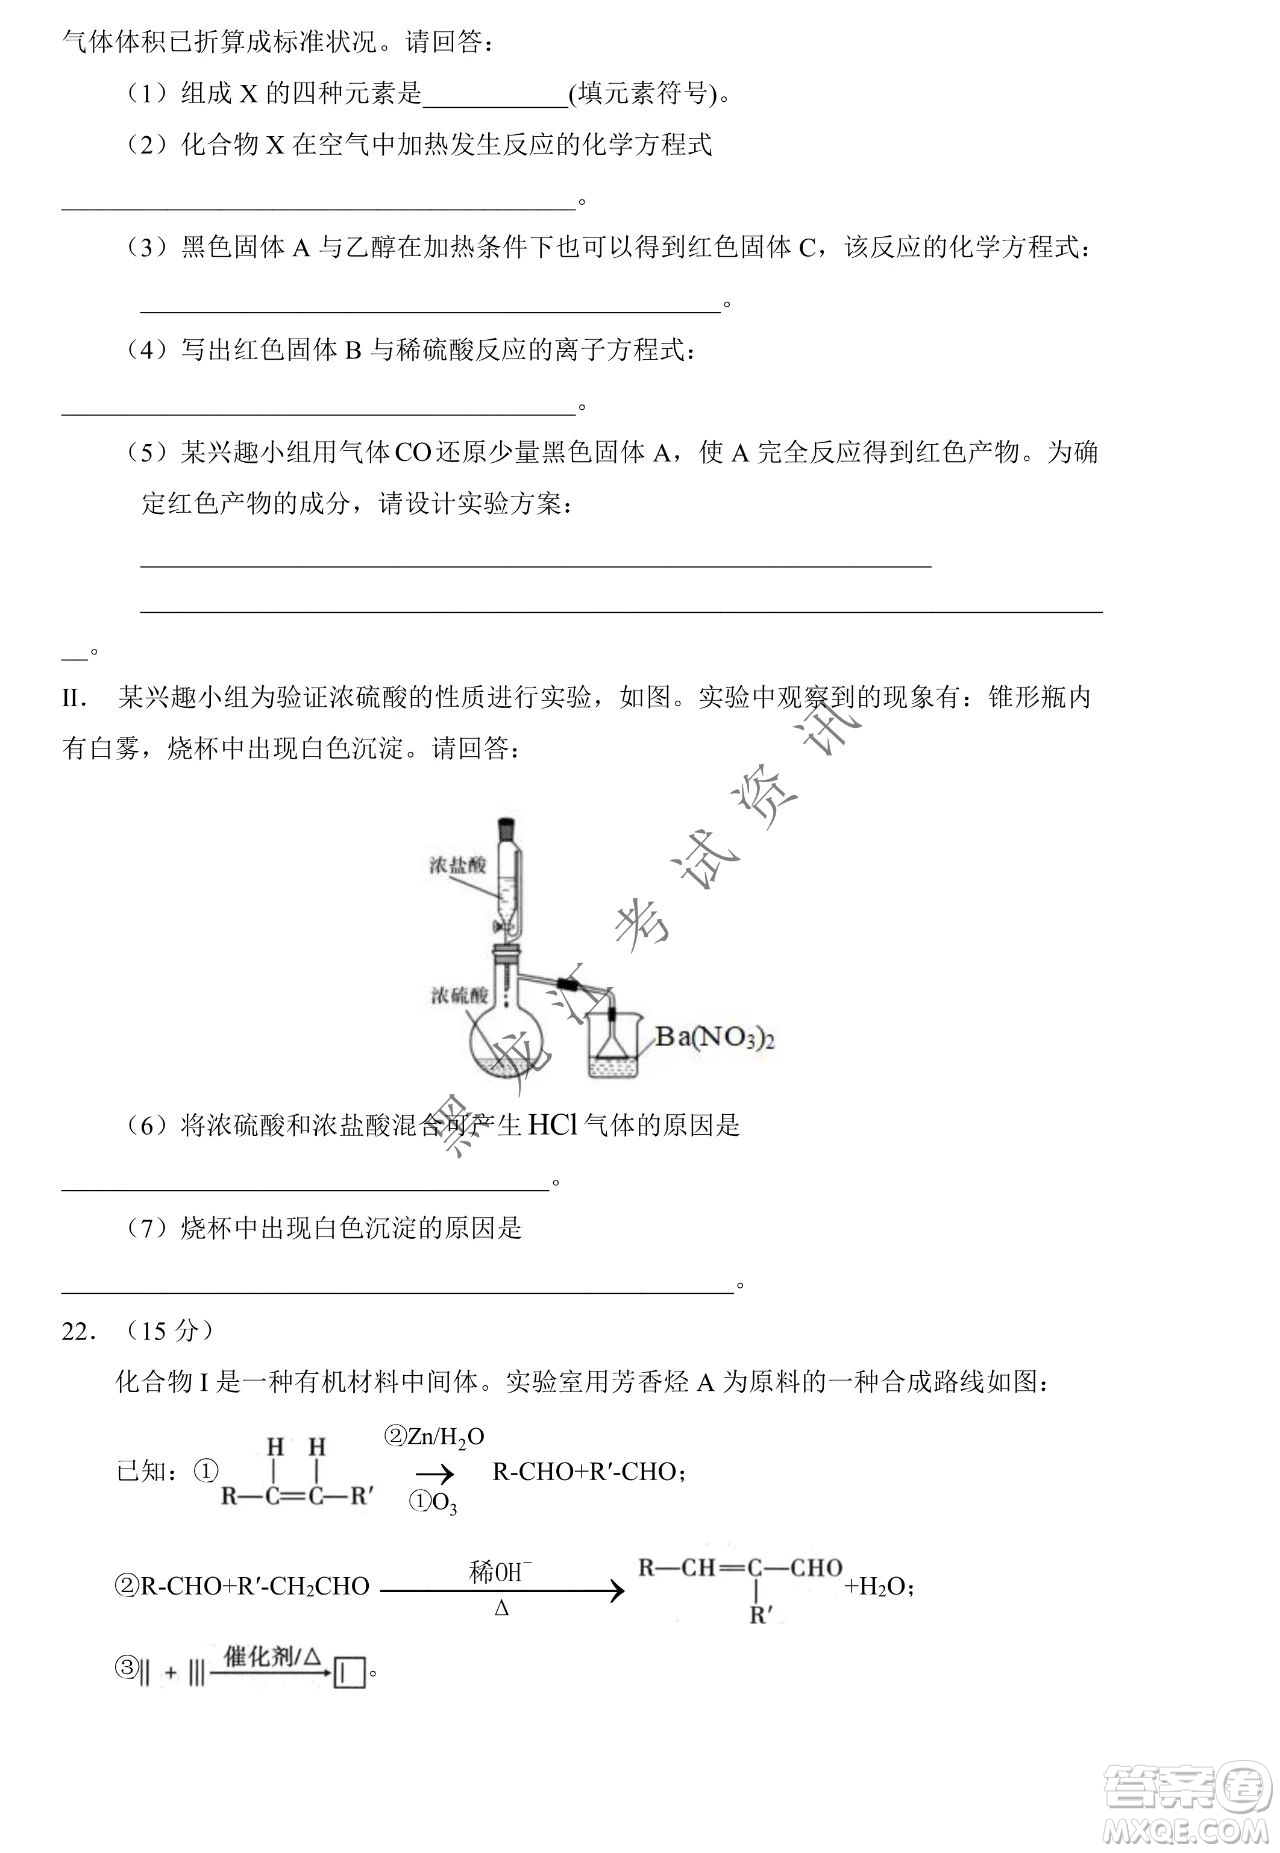 大庆市铁人中学2019级高三上学期开学考试化学试题及答案